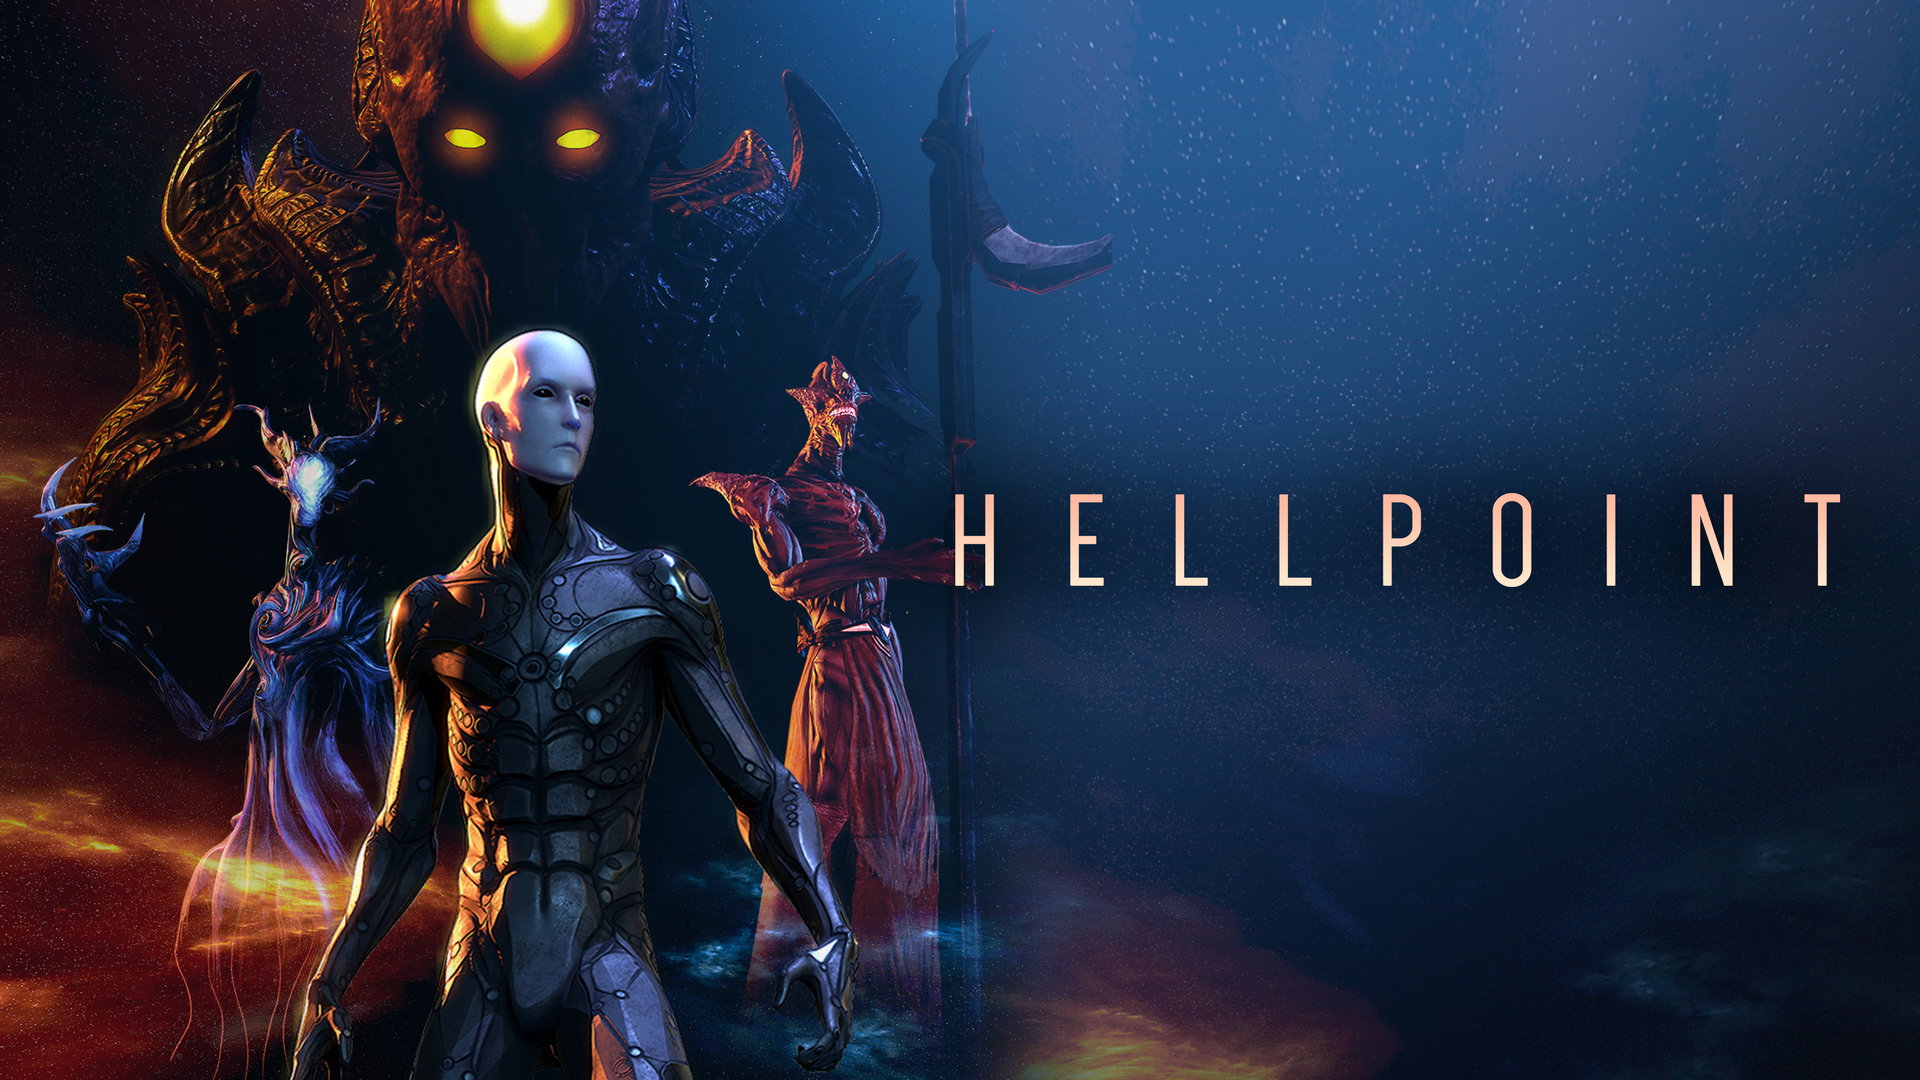 Hellpoint เกมสไตล์ซีรีส์ Souls เตรียมวางจำหน่าย 16 เม.ย. นี้